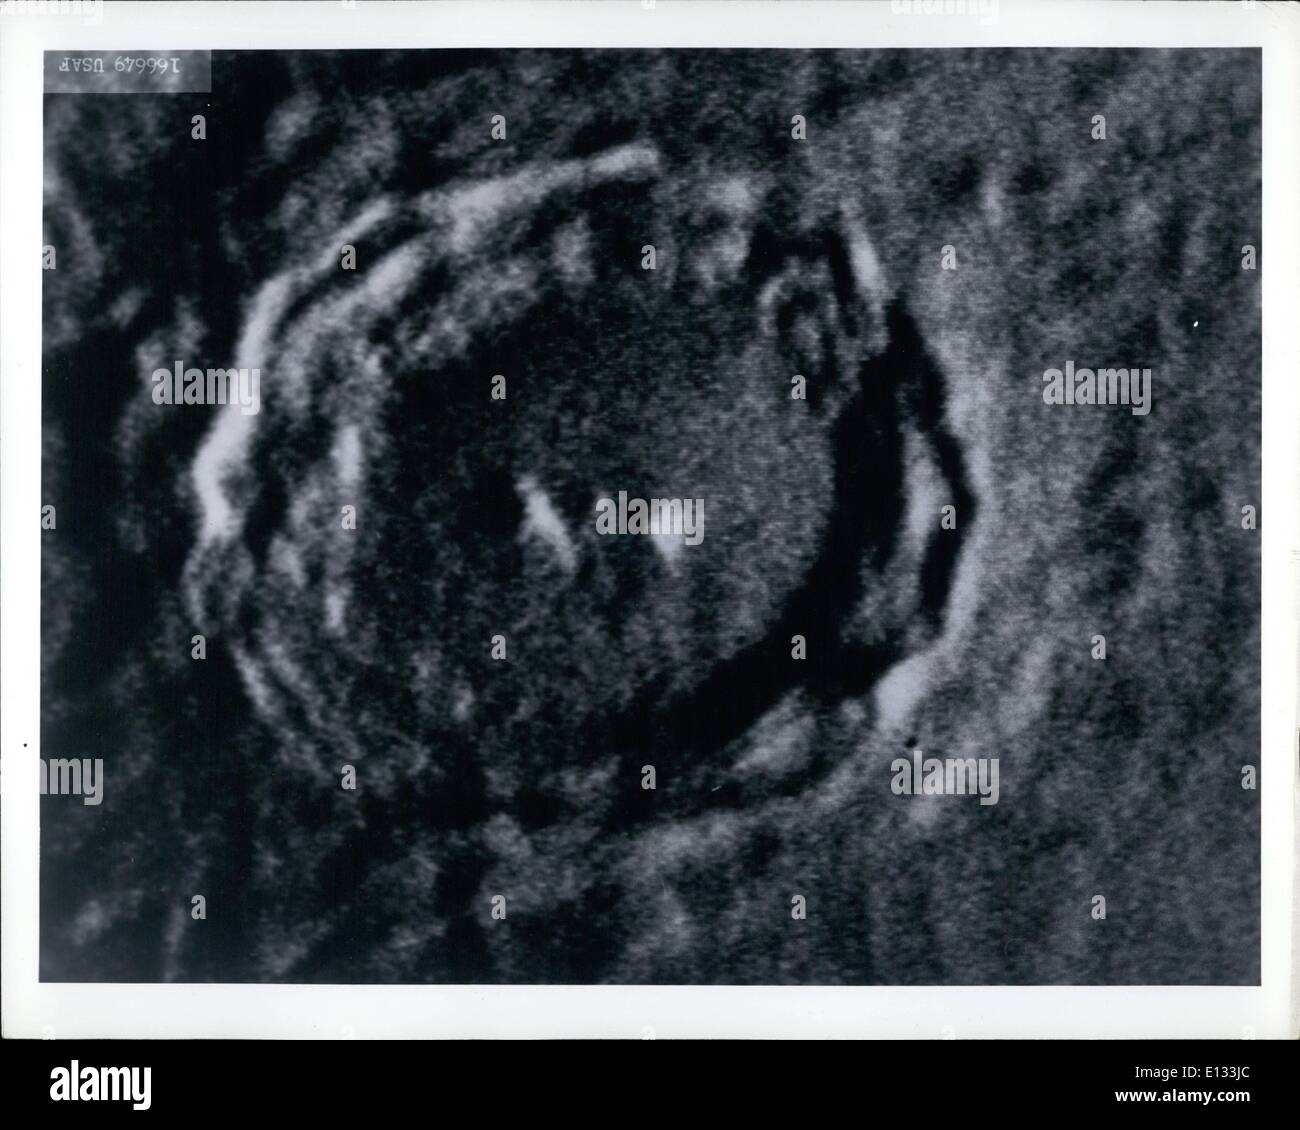 Febbraio 26, 2012 - USAF - Cratere Copernicus - questo particolare cratere sulla superficie della luna è noto come Copernico, nominato per l'astronomo olandese. Il centro è a 50 miglia. Foto Stock